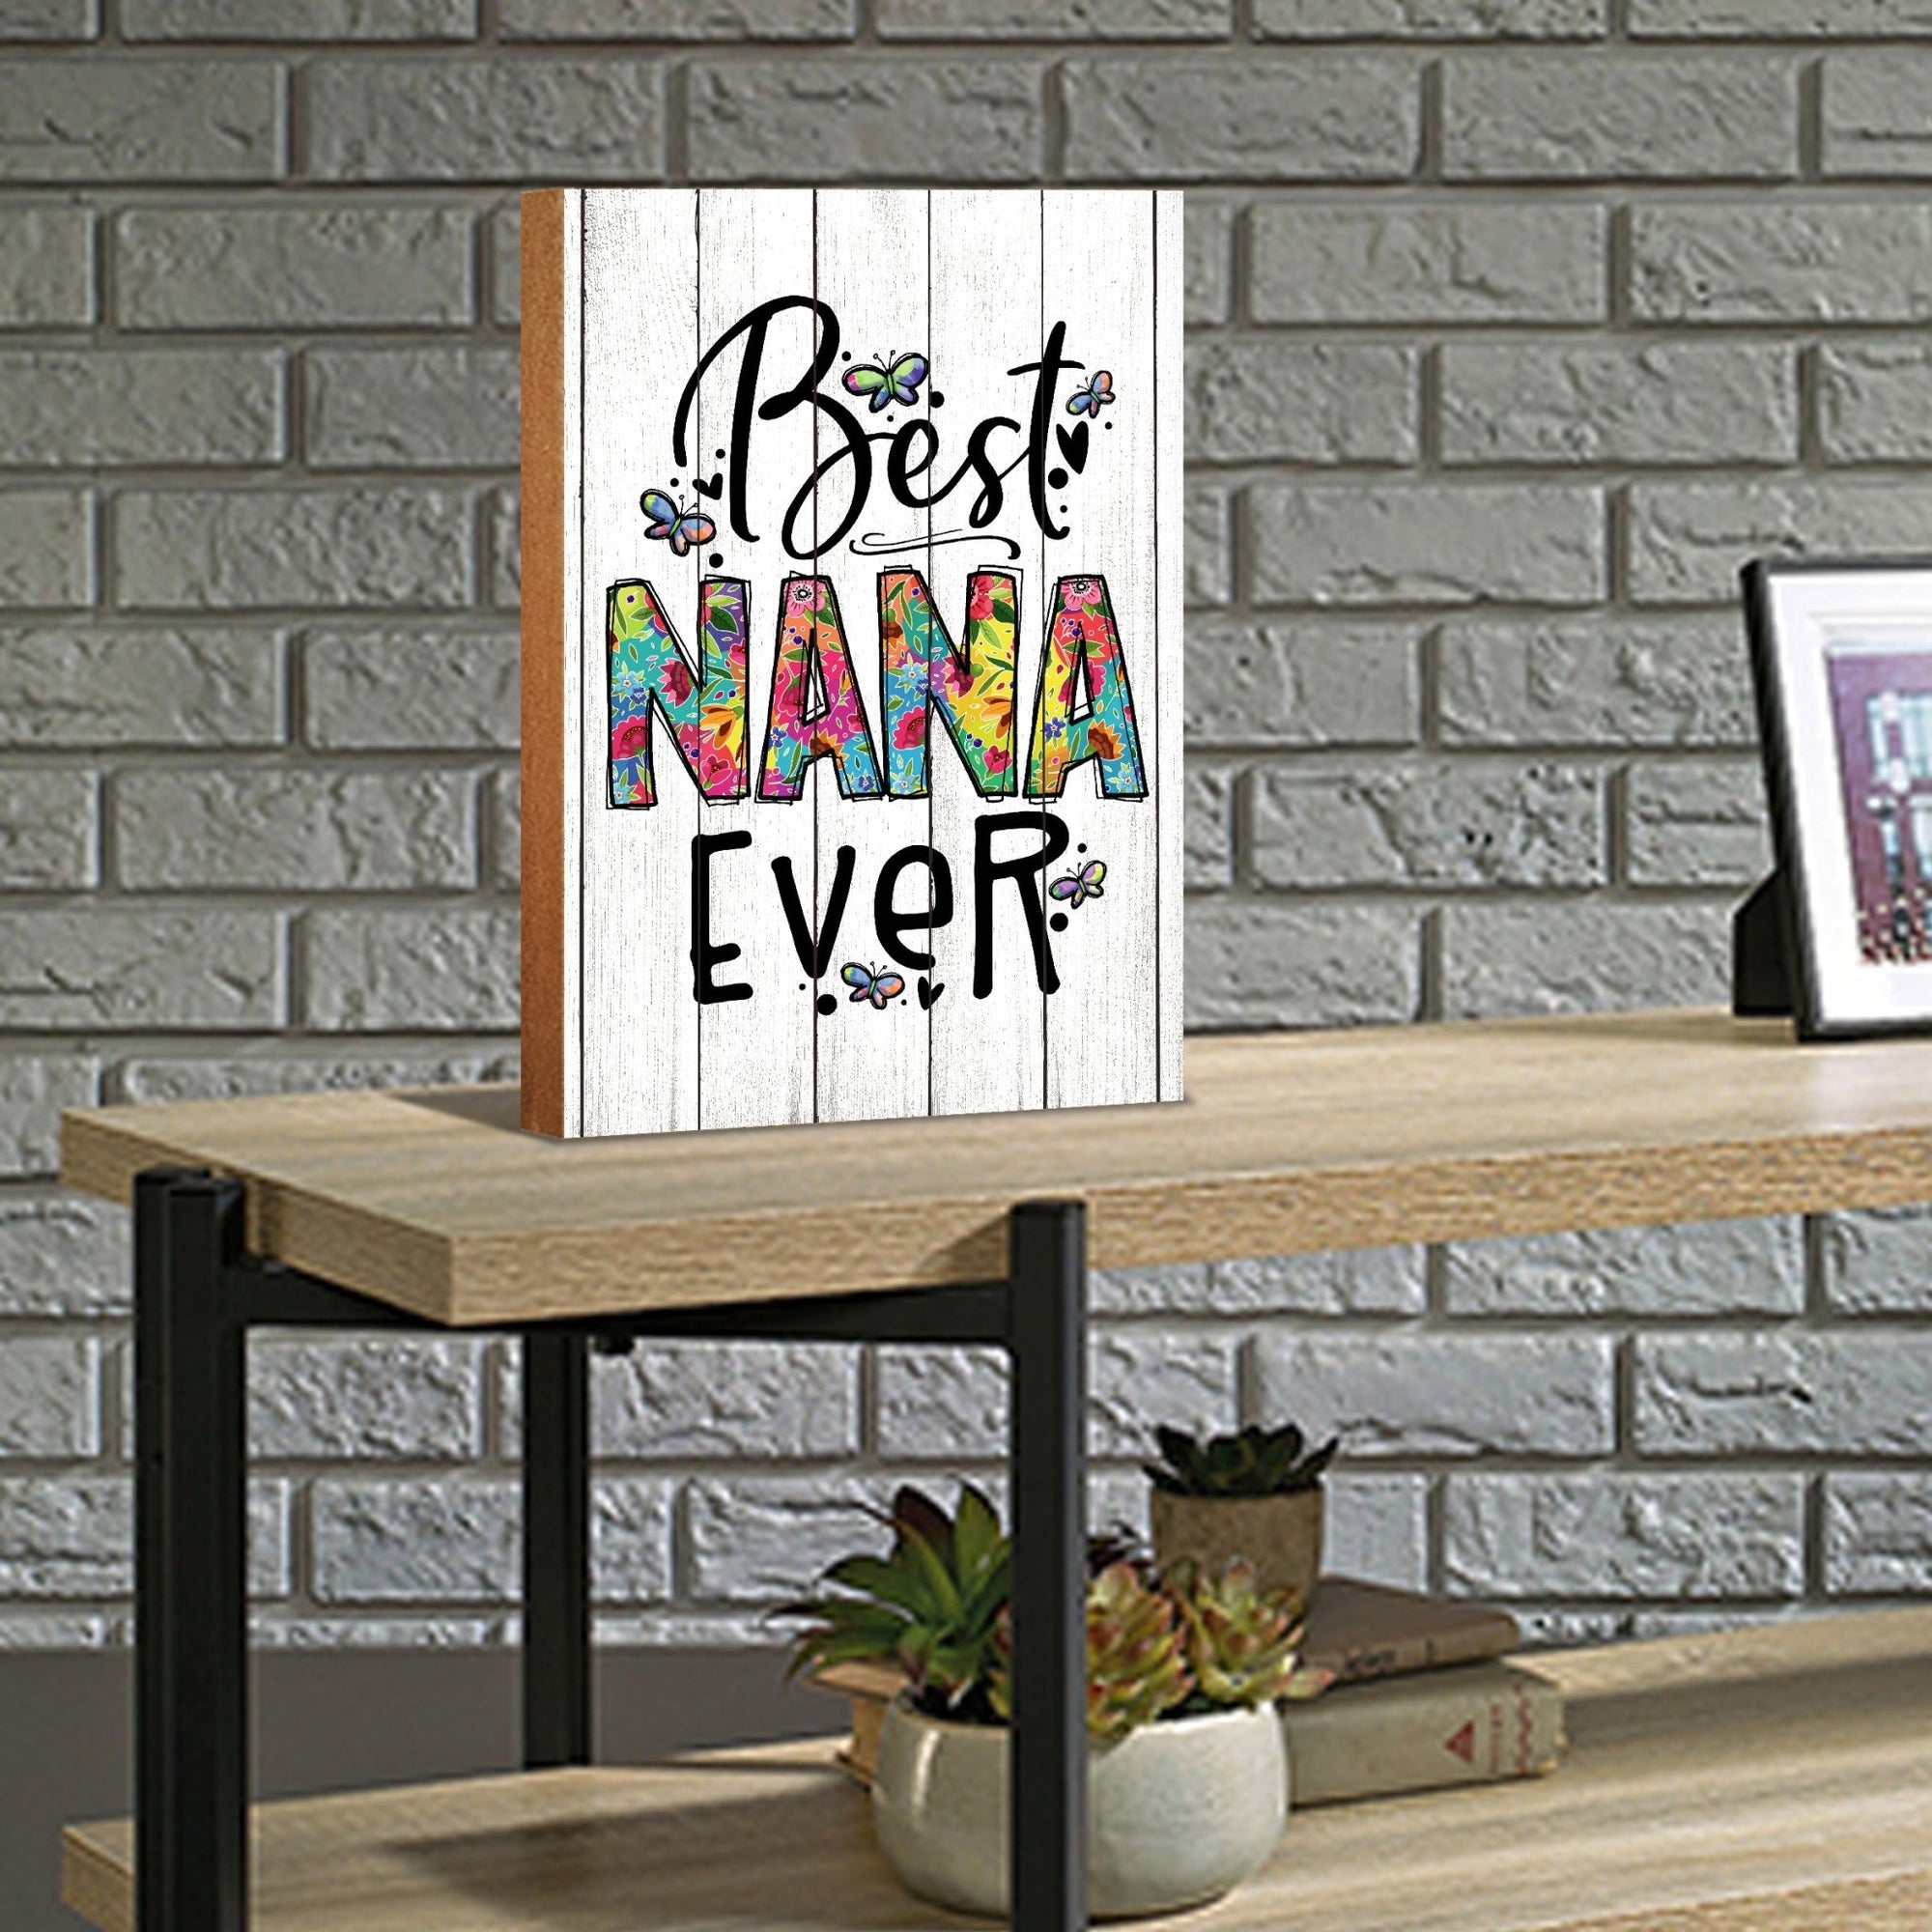 Modern-Inspired White Wooden Graffiti Art Shelf Sitter Gift Idea & Home Décor - Best Nana Ever - LifeSong Milestones